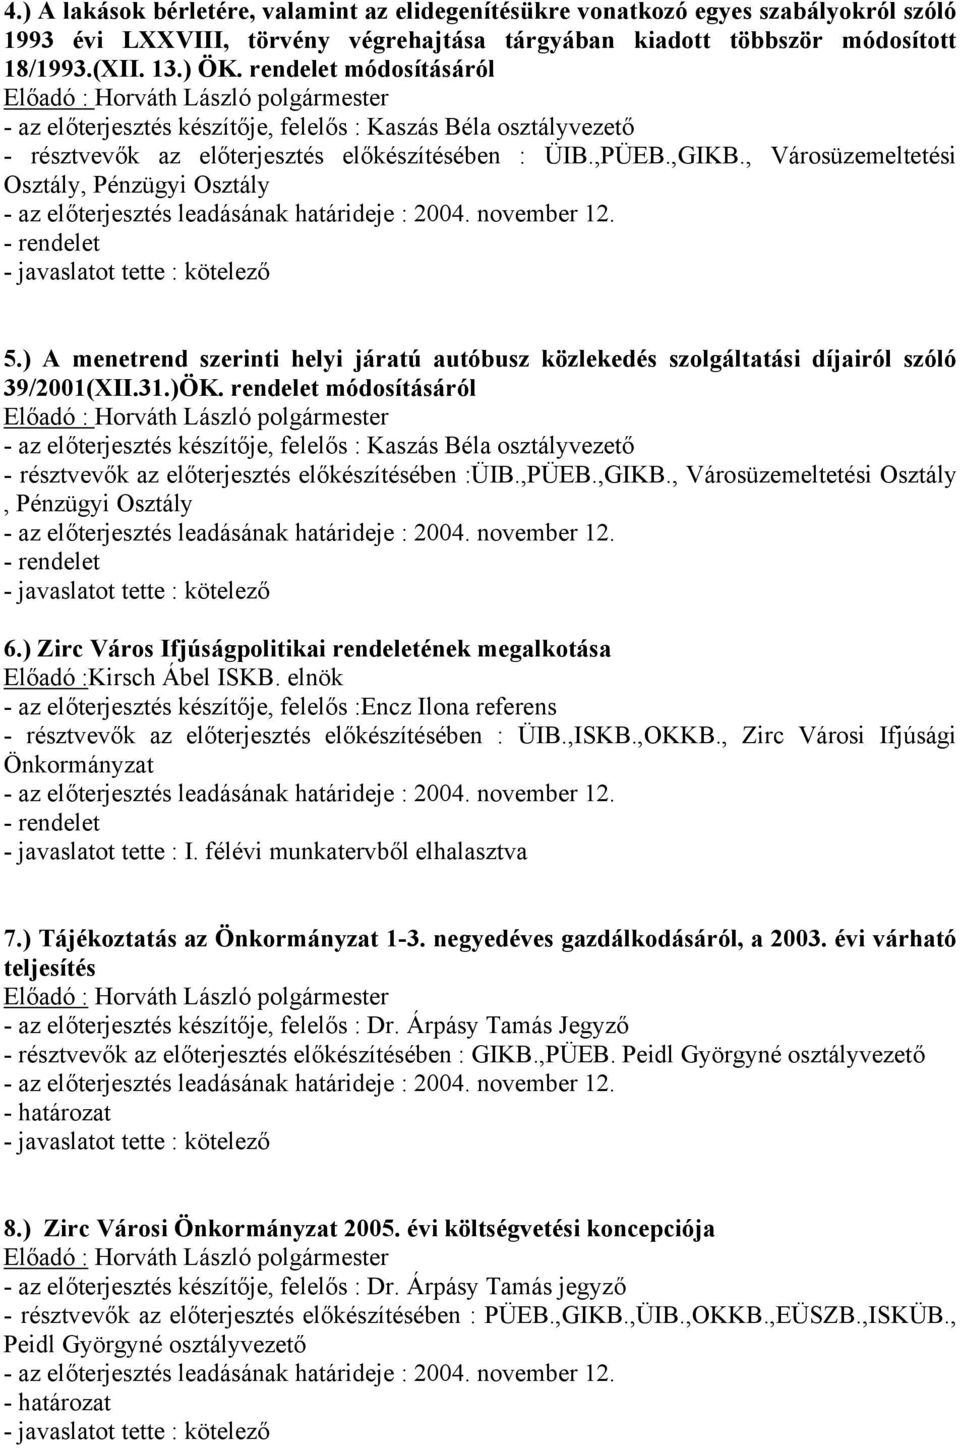 ) A menetrend szerinti helyi járatú autóbusz közlekedés szolgáltatási díjairól szóló 39/2001(XII.31.)ÖK. rendelet módosításáról - résztvevők az előterjesztés előkészítésében :ÜIB.,PÜEB.,GIKB.